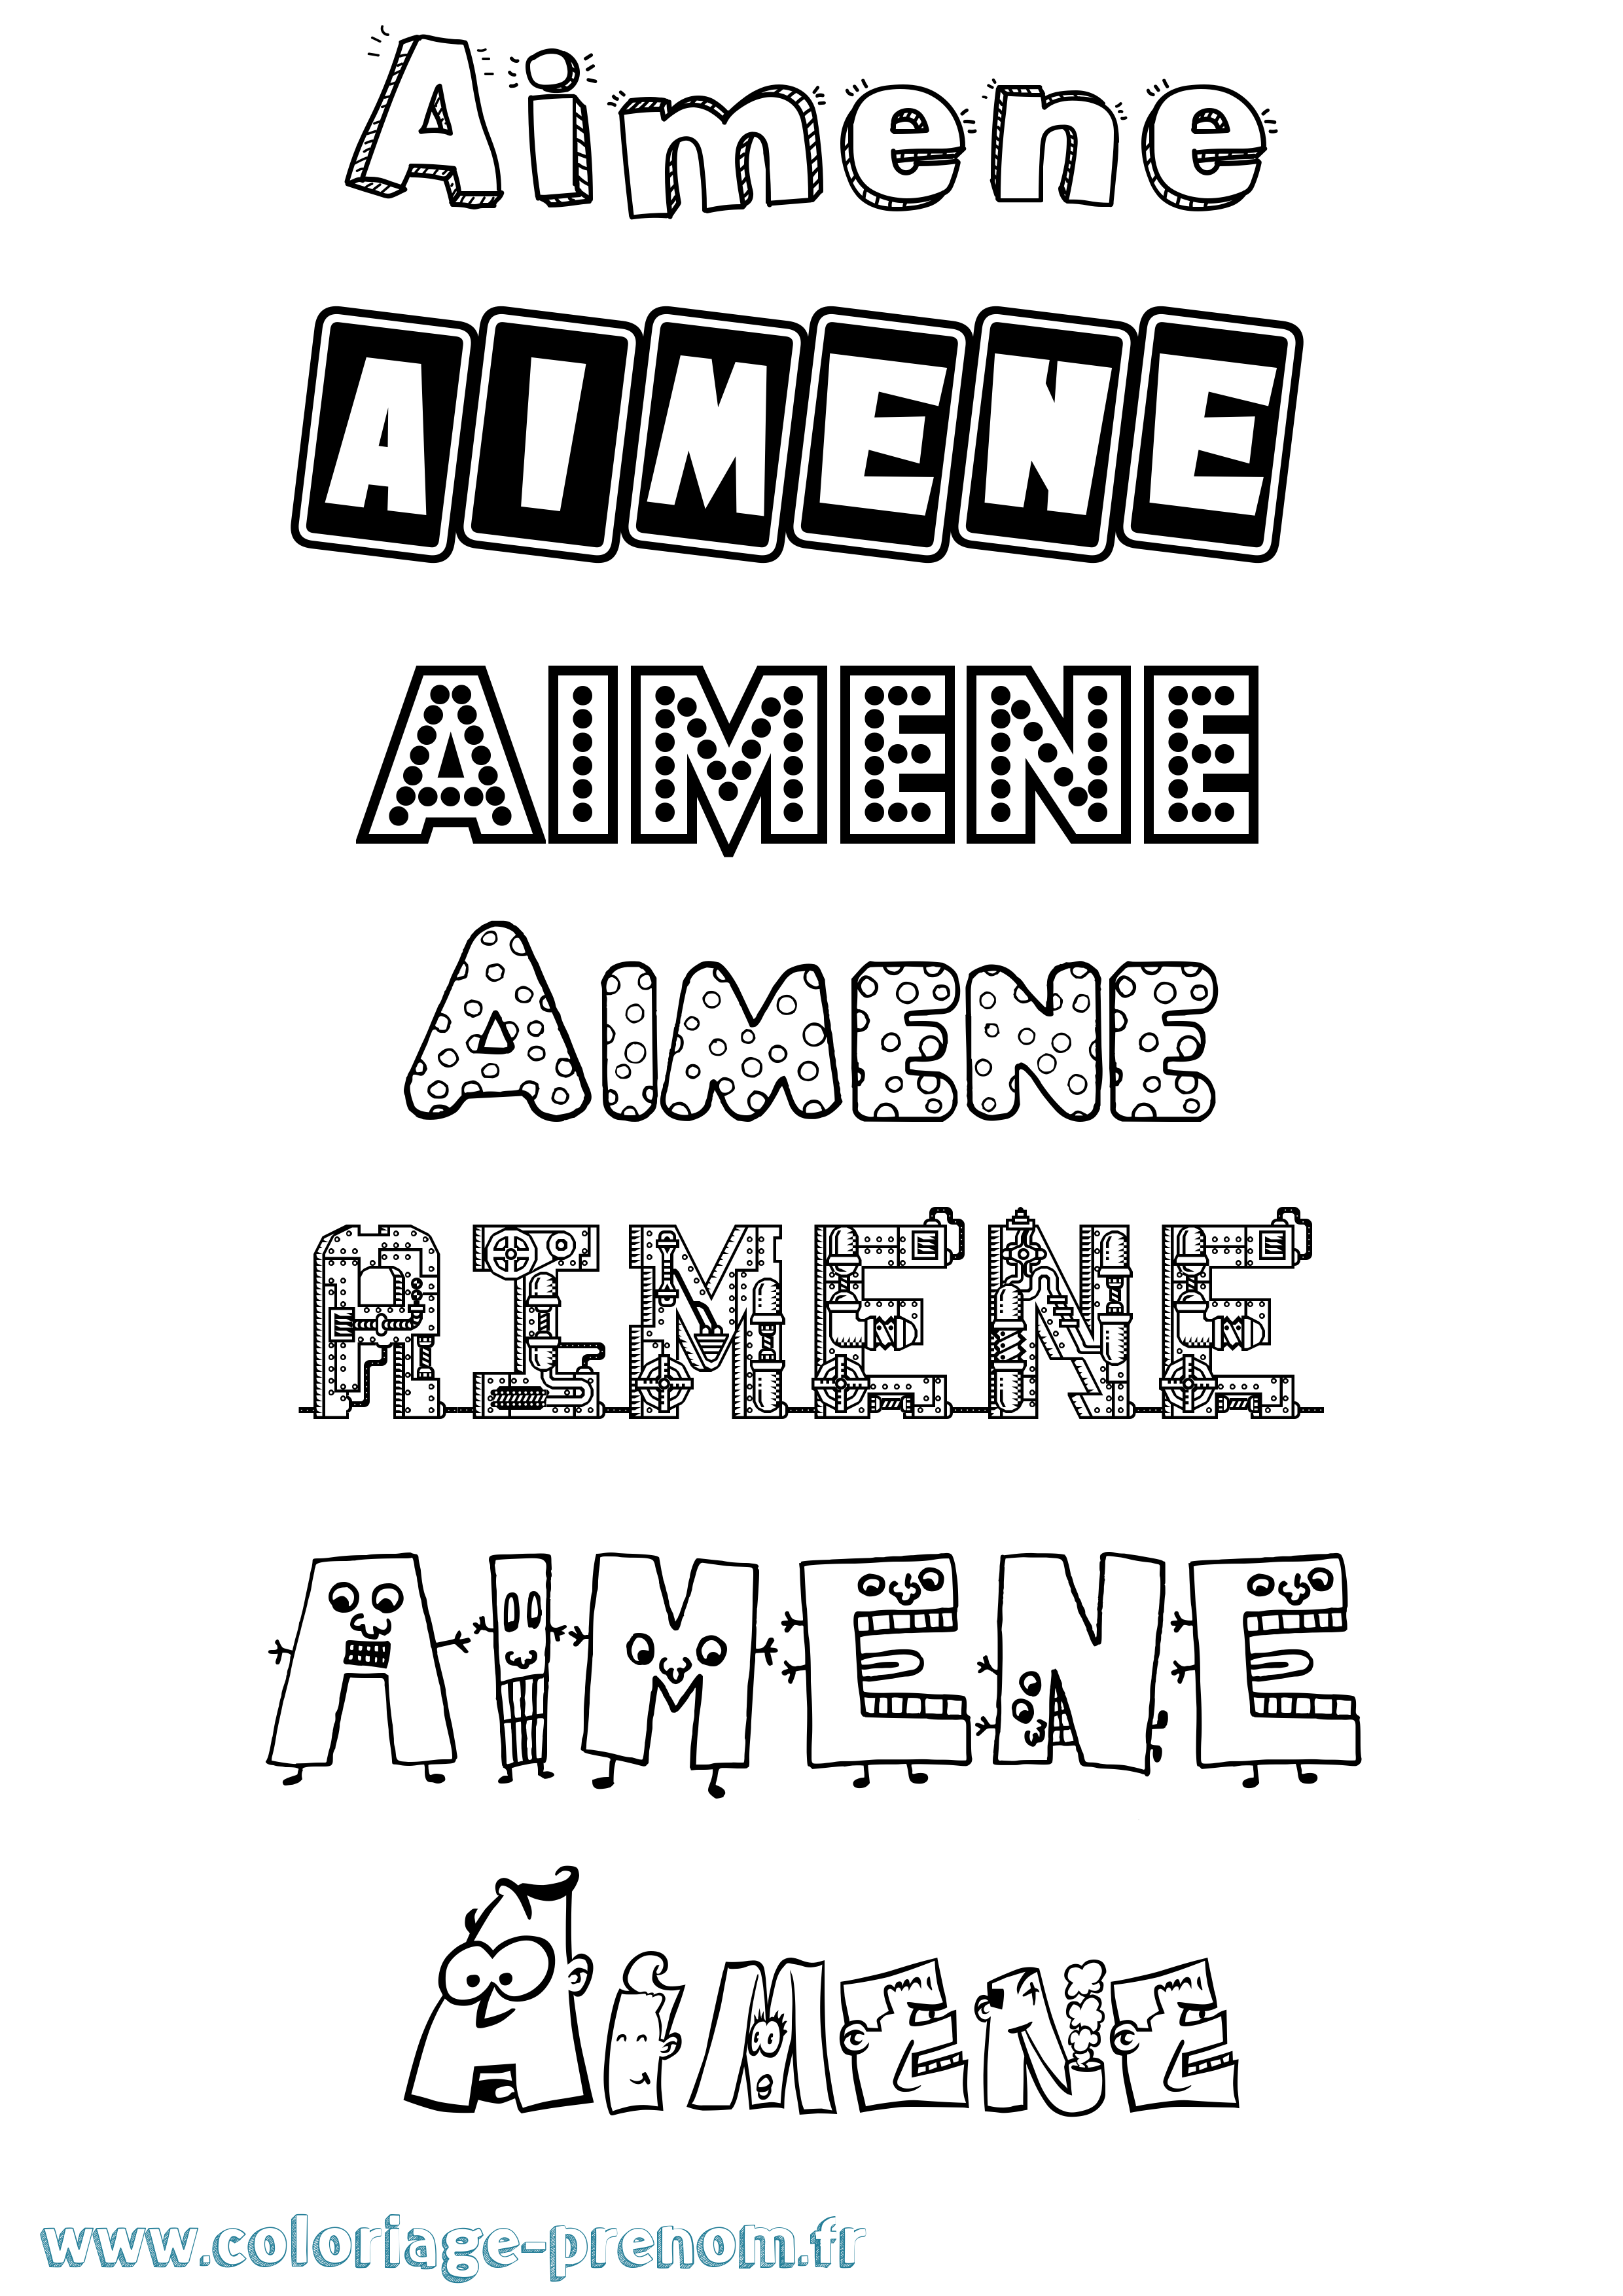 Coloriage prénom Aimene Fun